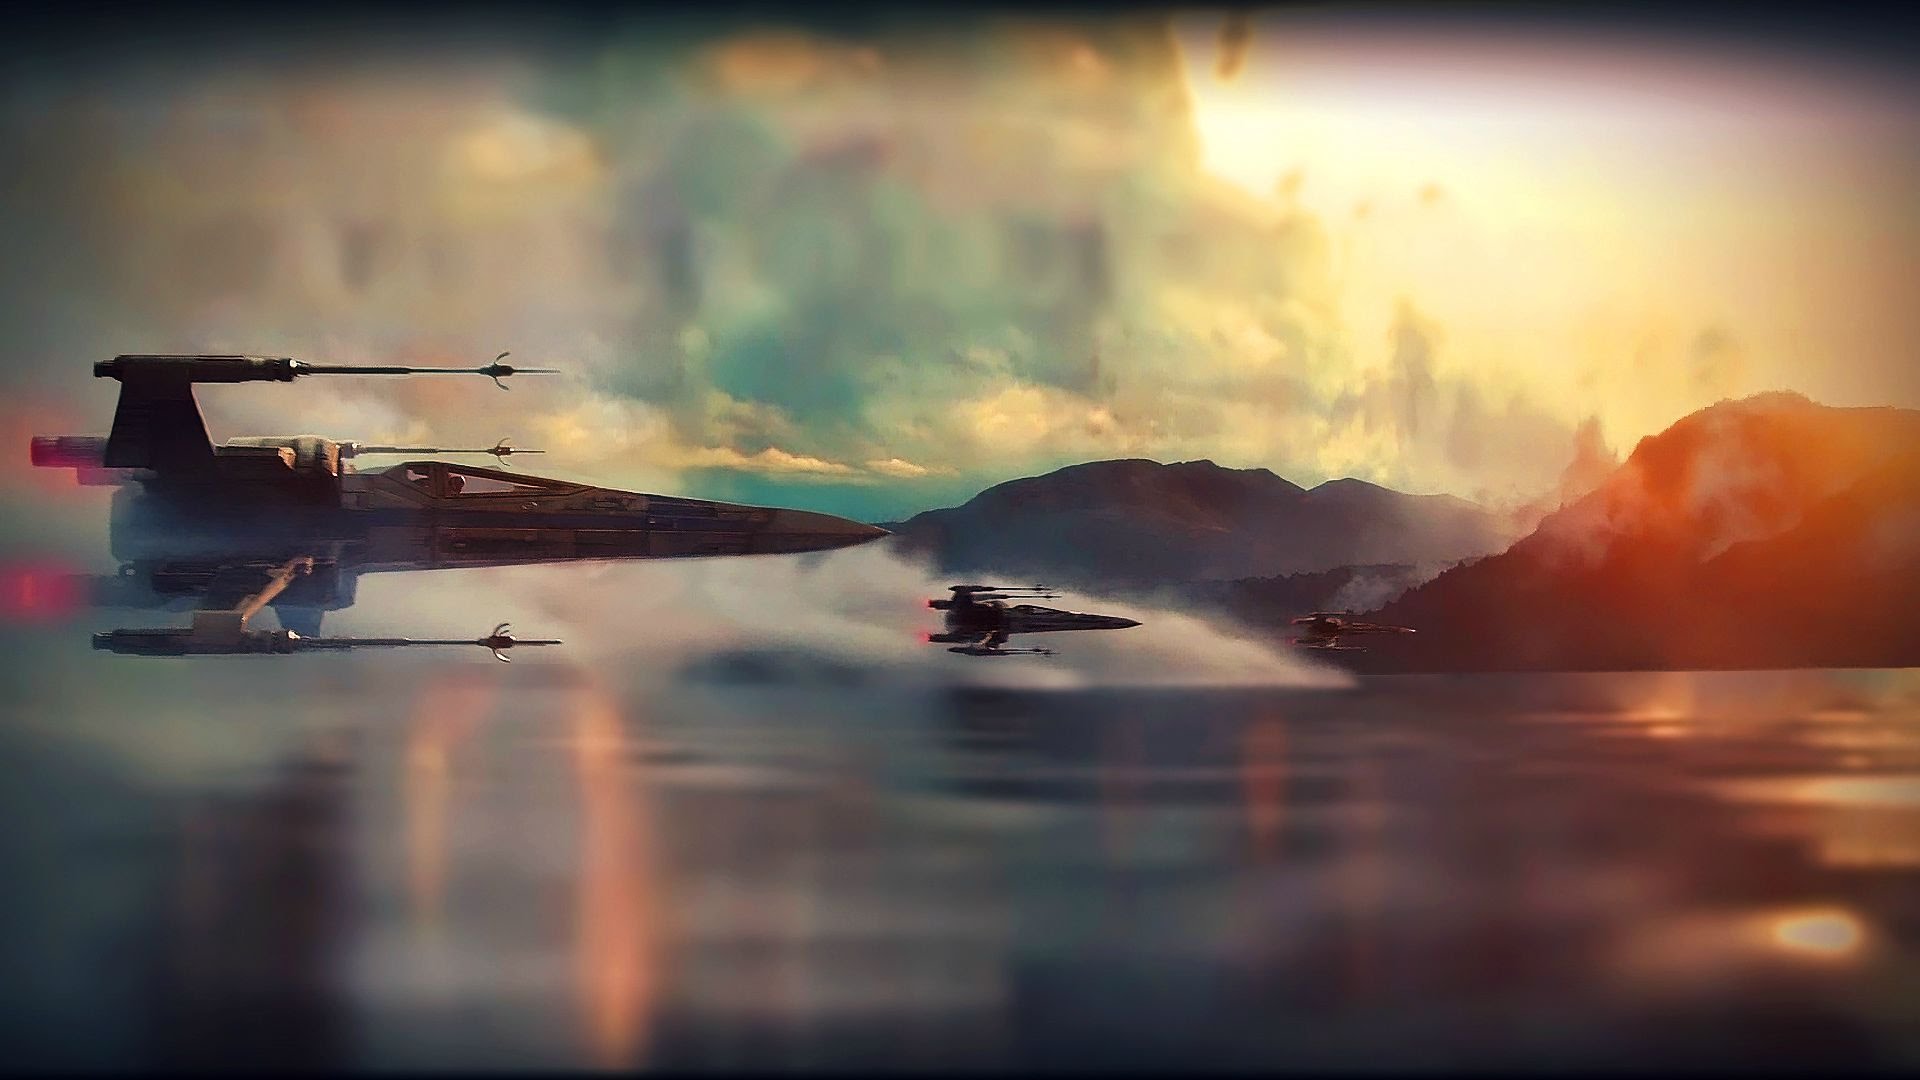 starwars-trailer-2015